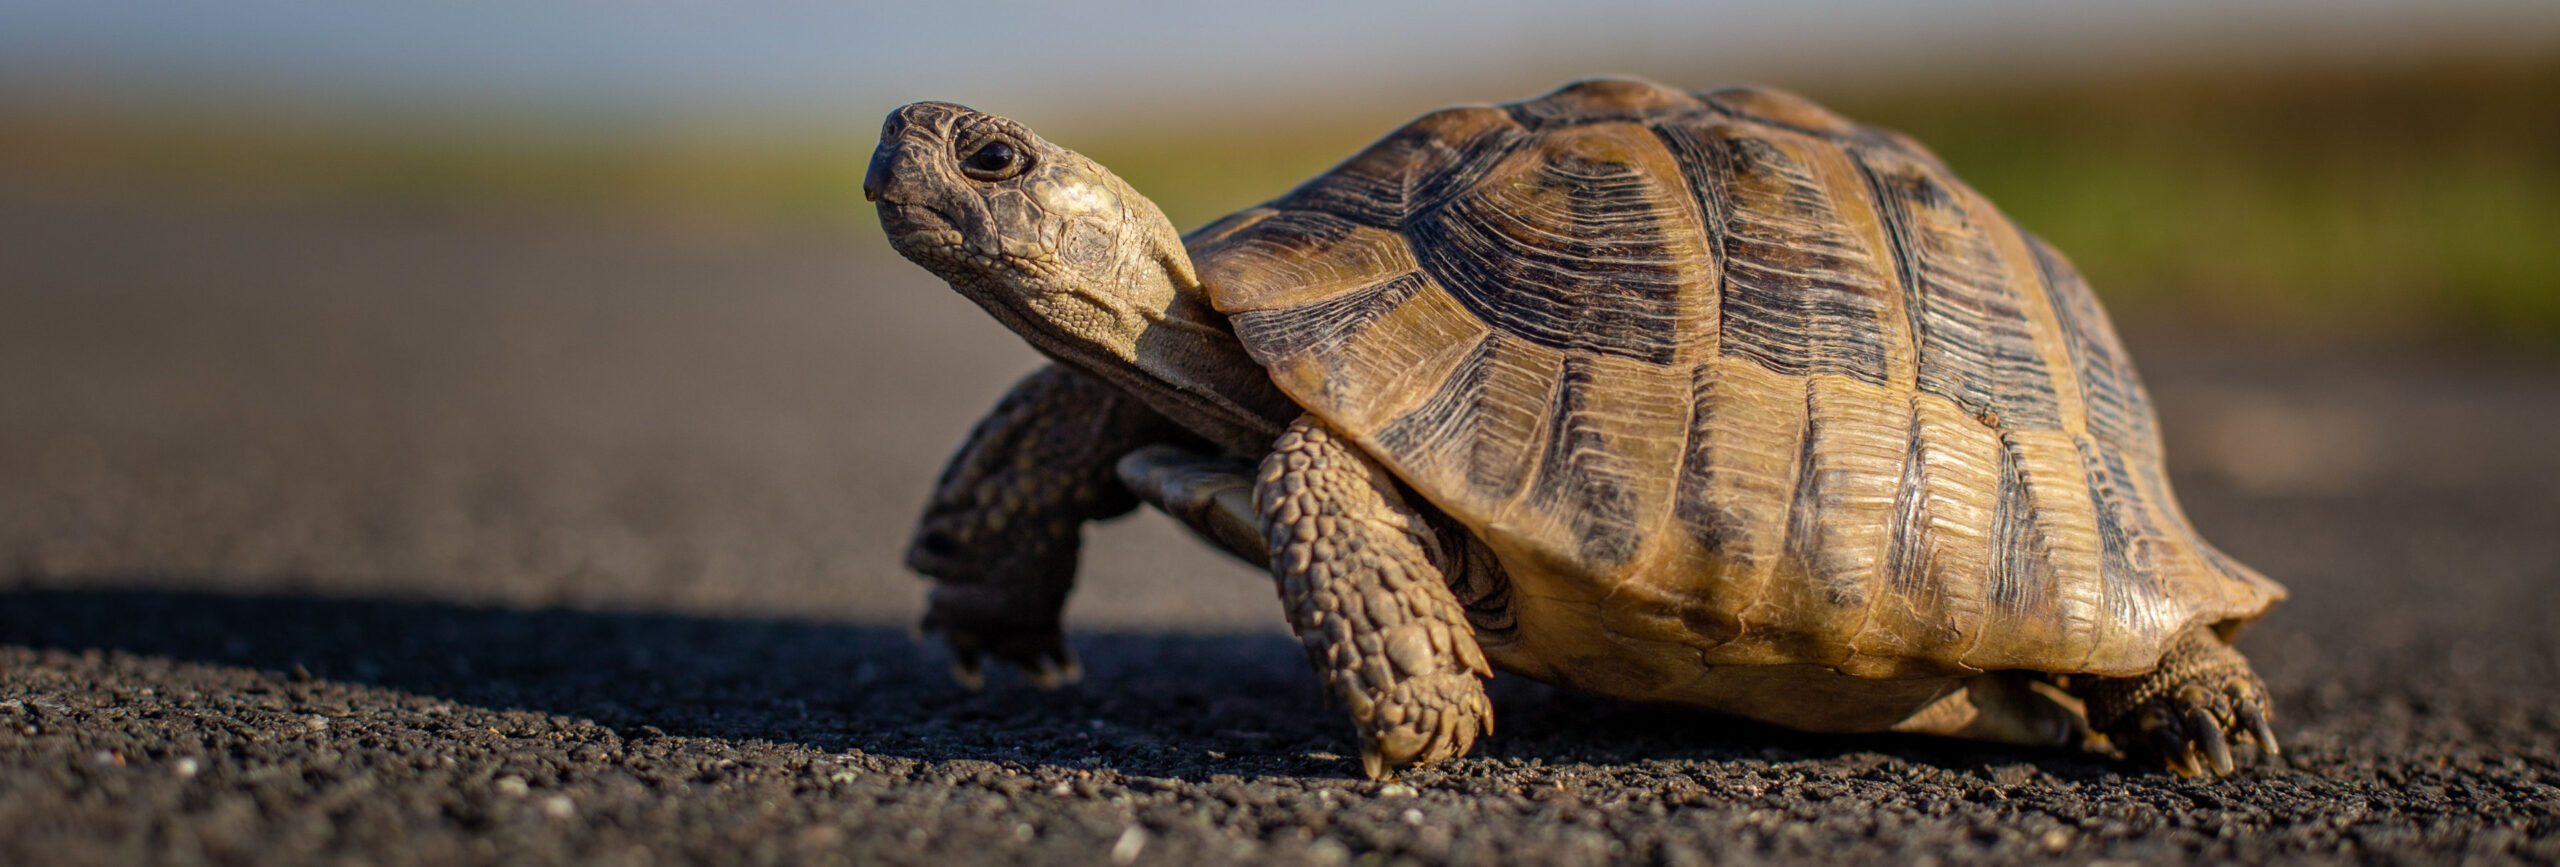 Schildkröte auf schwarzer körniger Strasse vor unscharfem Hintergrund. - insysta